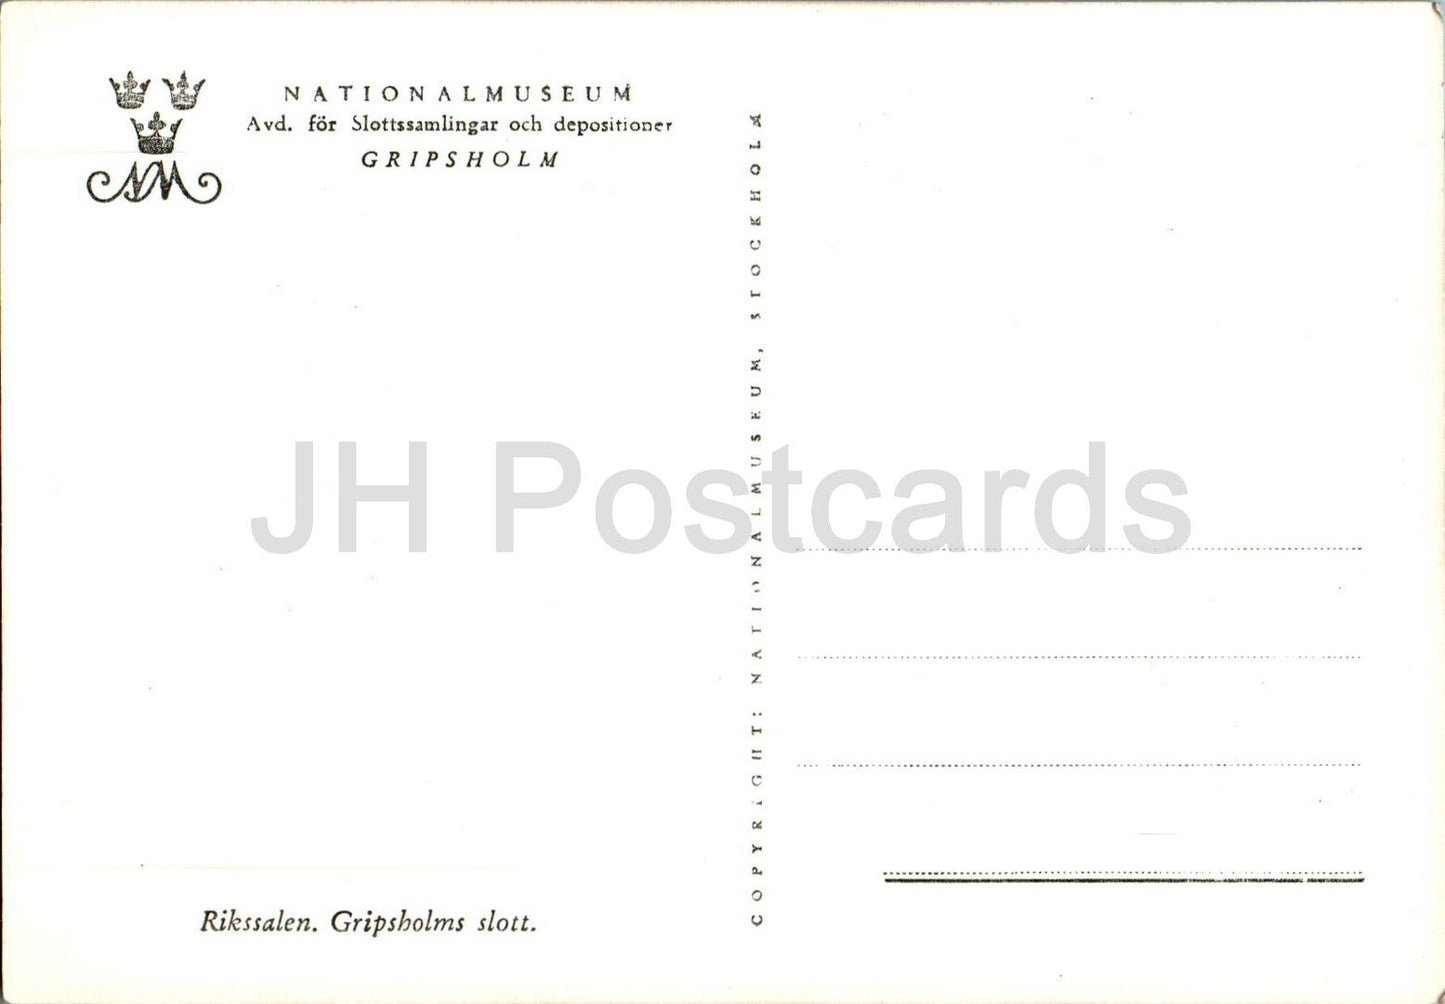 Gripsholms Slott - Rikssalen - Gripsholm - The National Hall - castle - old postcard - Sweden - unused